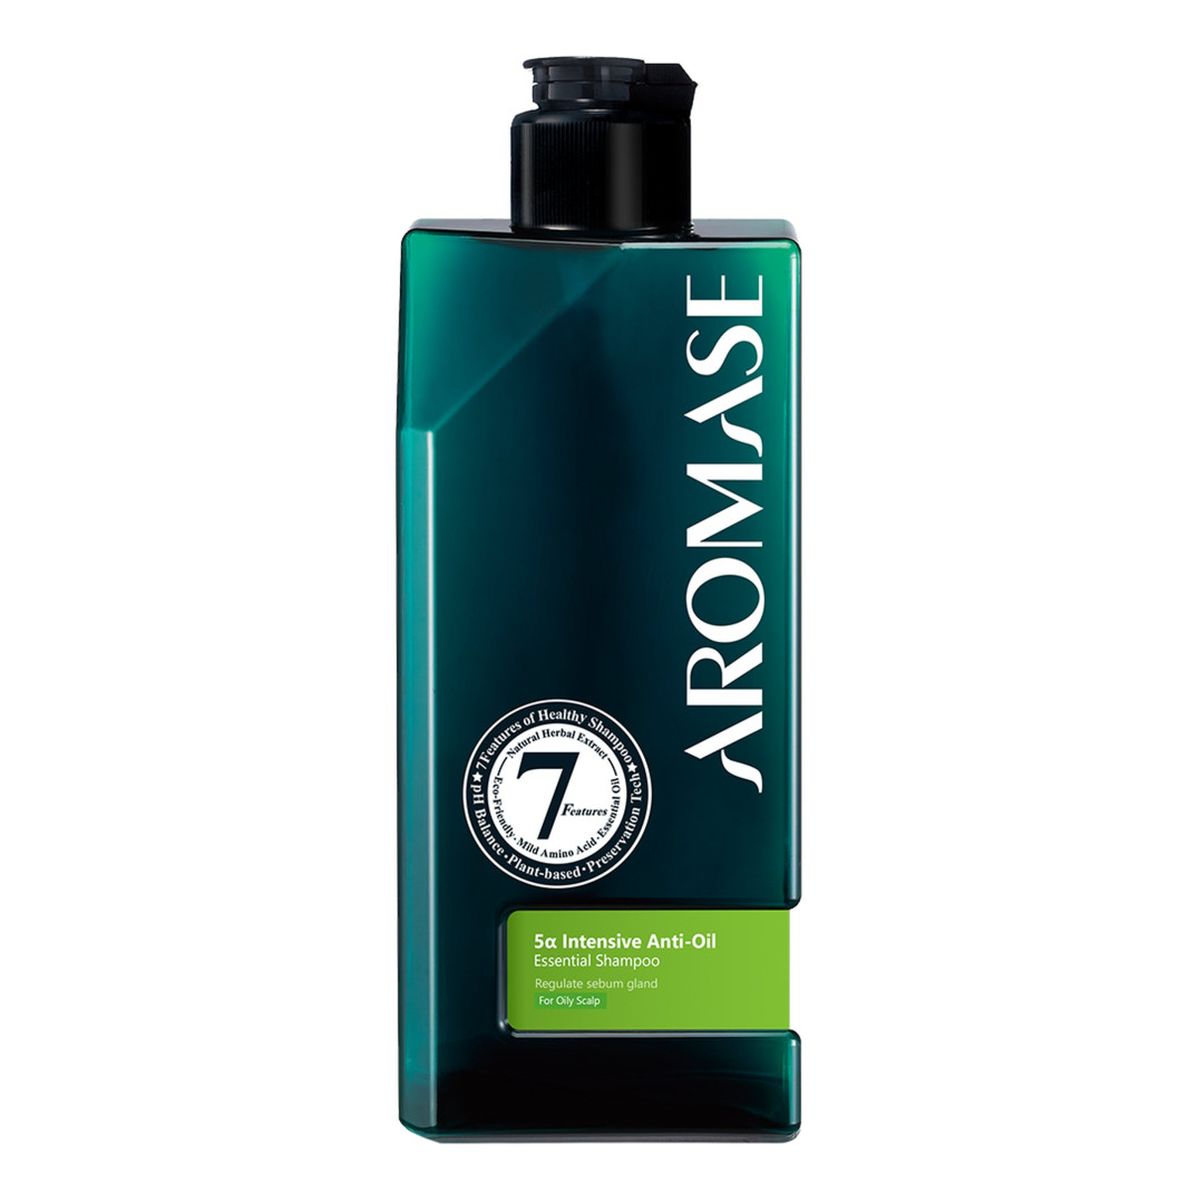 Aromase 5α Intensive Anti-Oil Essential Shampoo Szampon do przetłuszczającej się skóry głowy 90ml